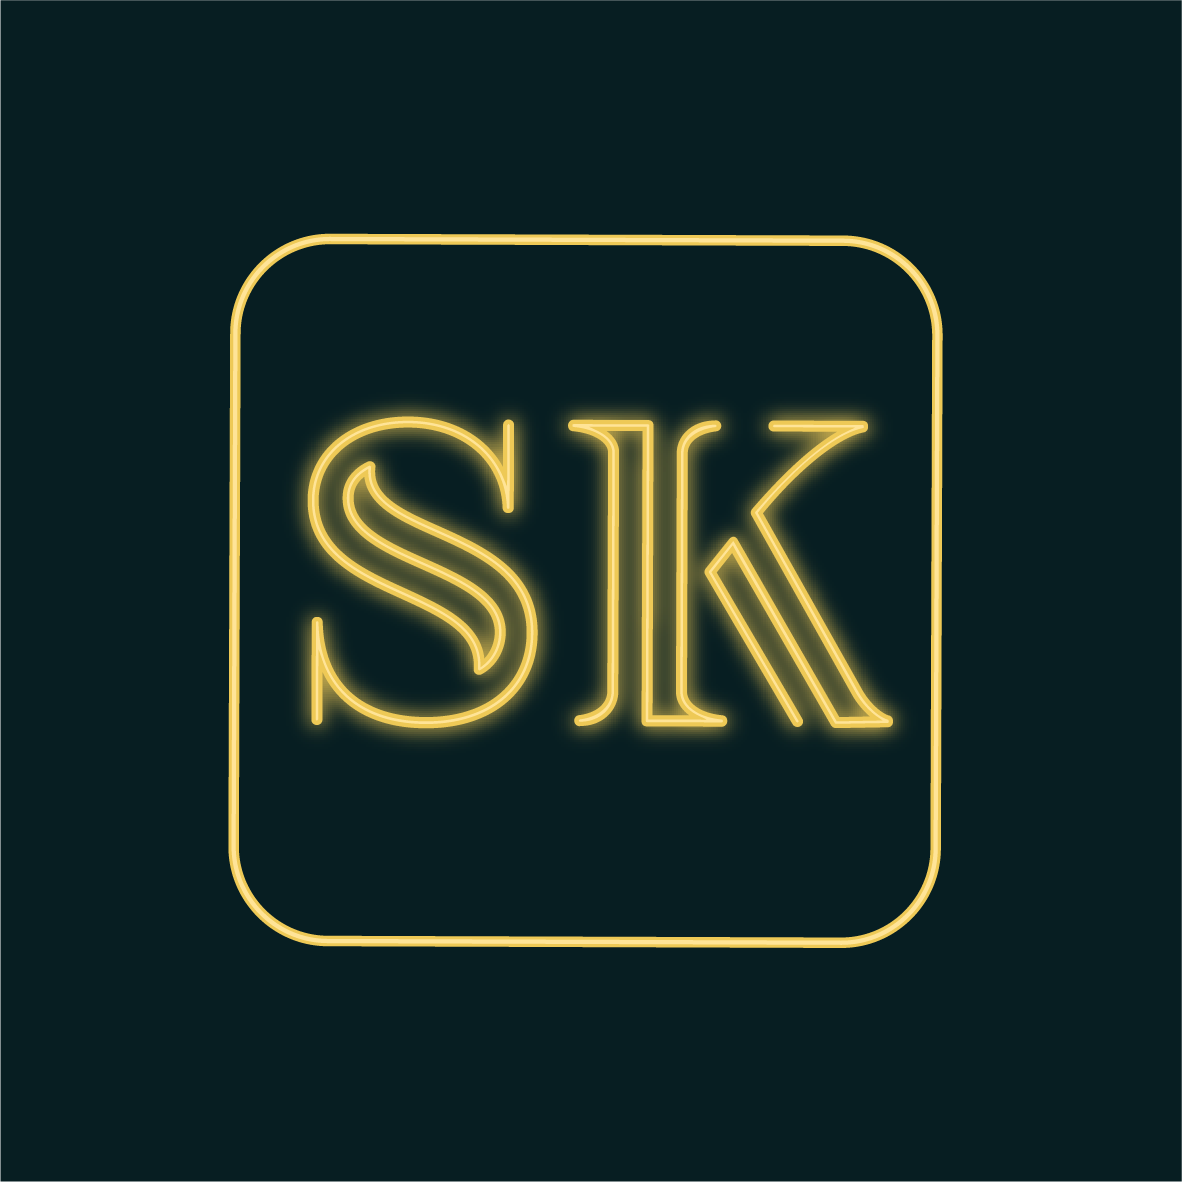 Viser et billede af en afrundet firkant, med initialerne SK i midten, med neoneffekt